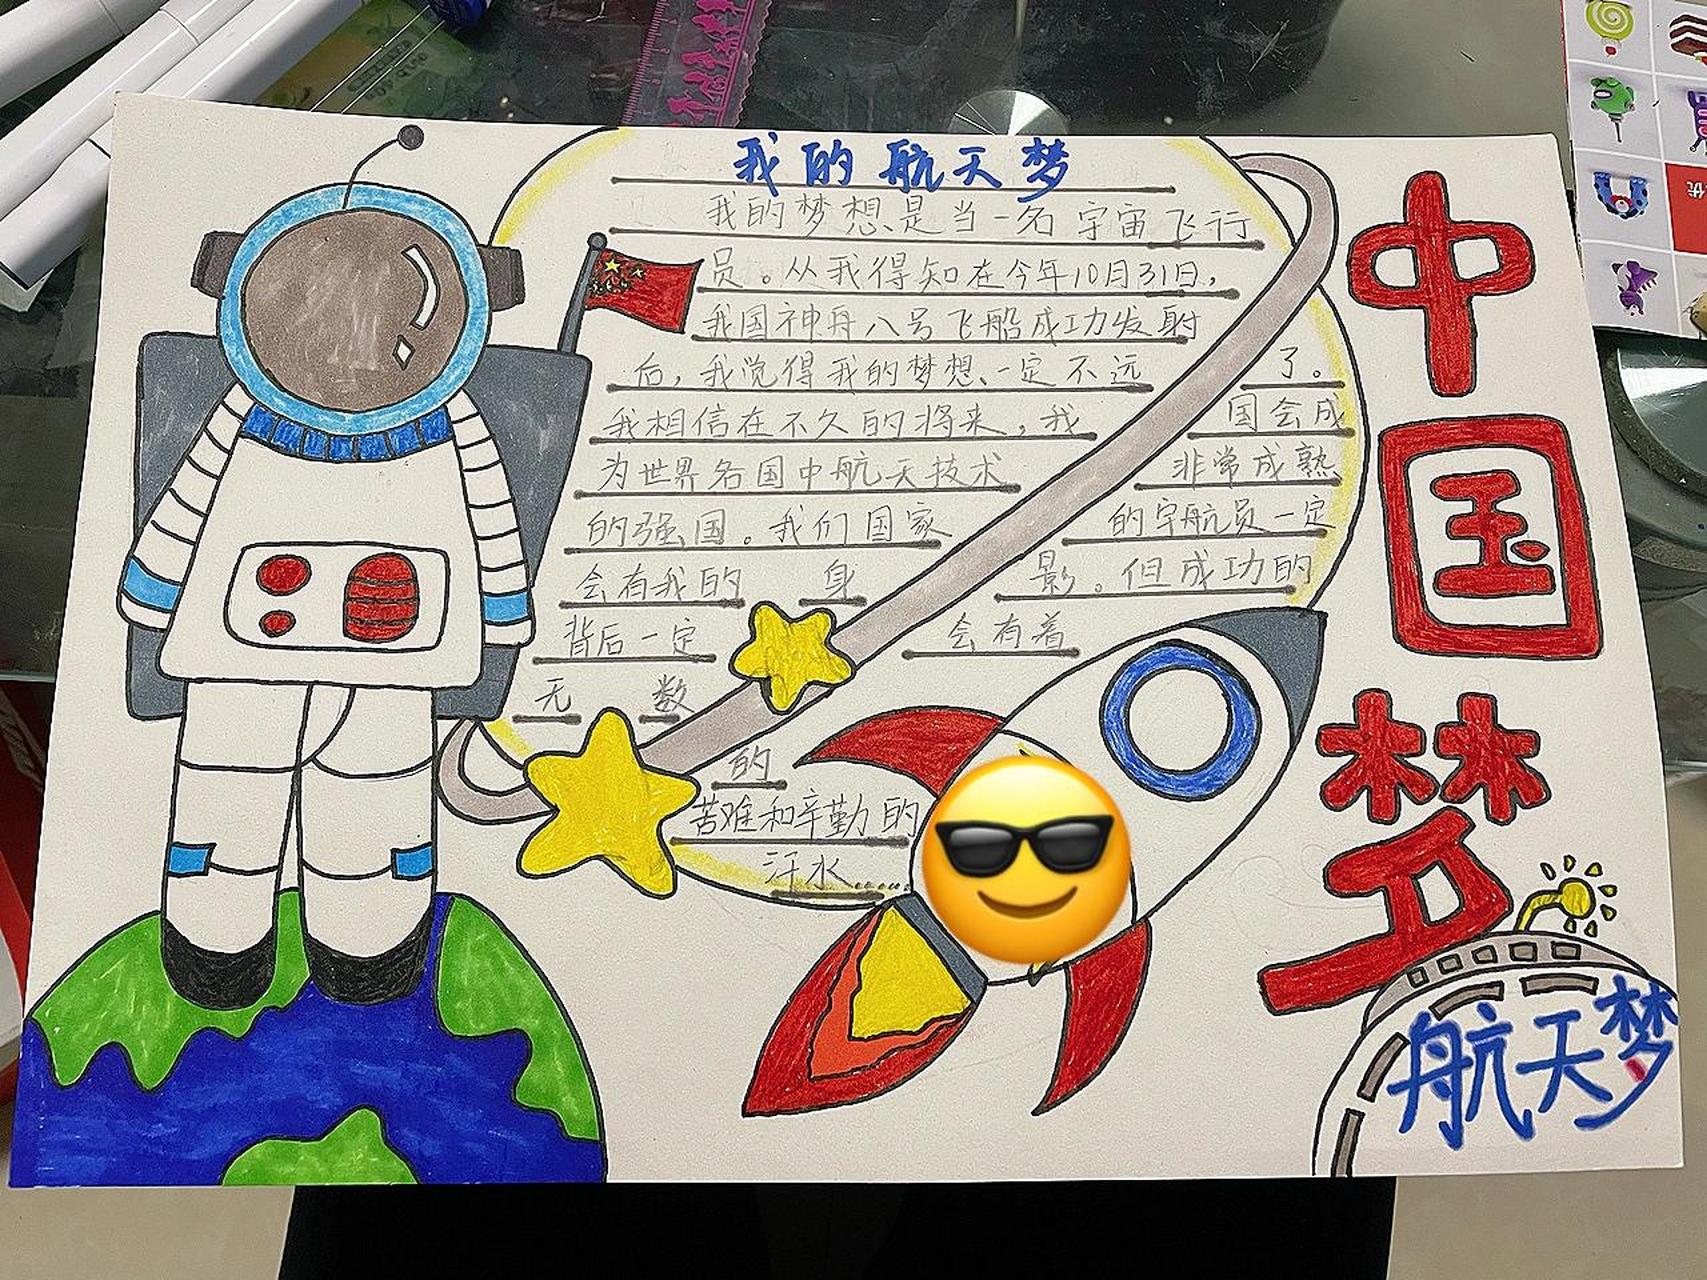 中国梦航天梦主题手抄报 低年级段小学生中国梦主题 欢迎同学们参考哦